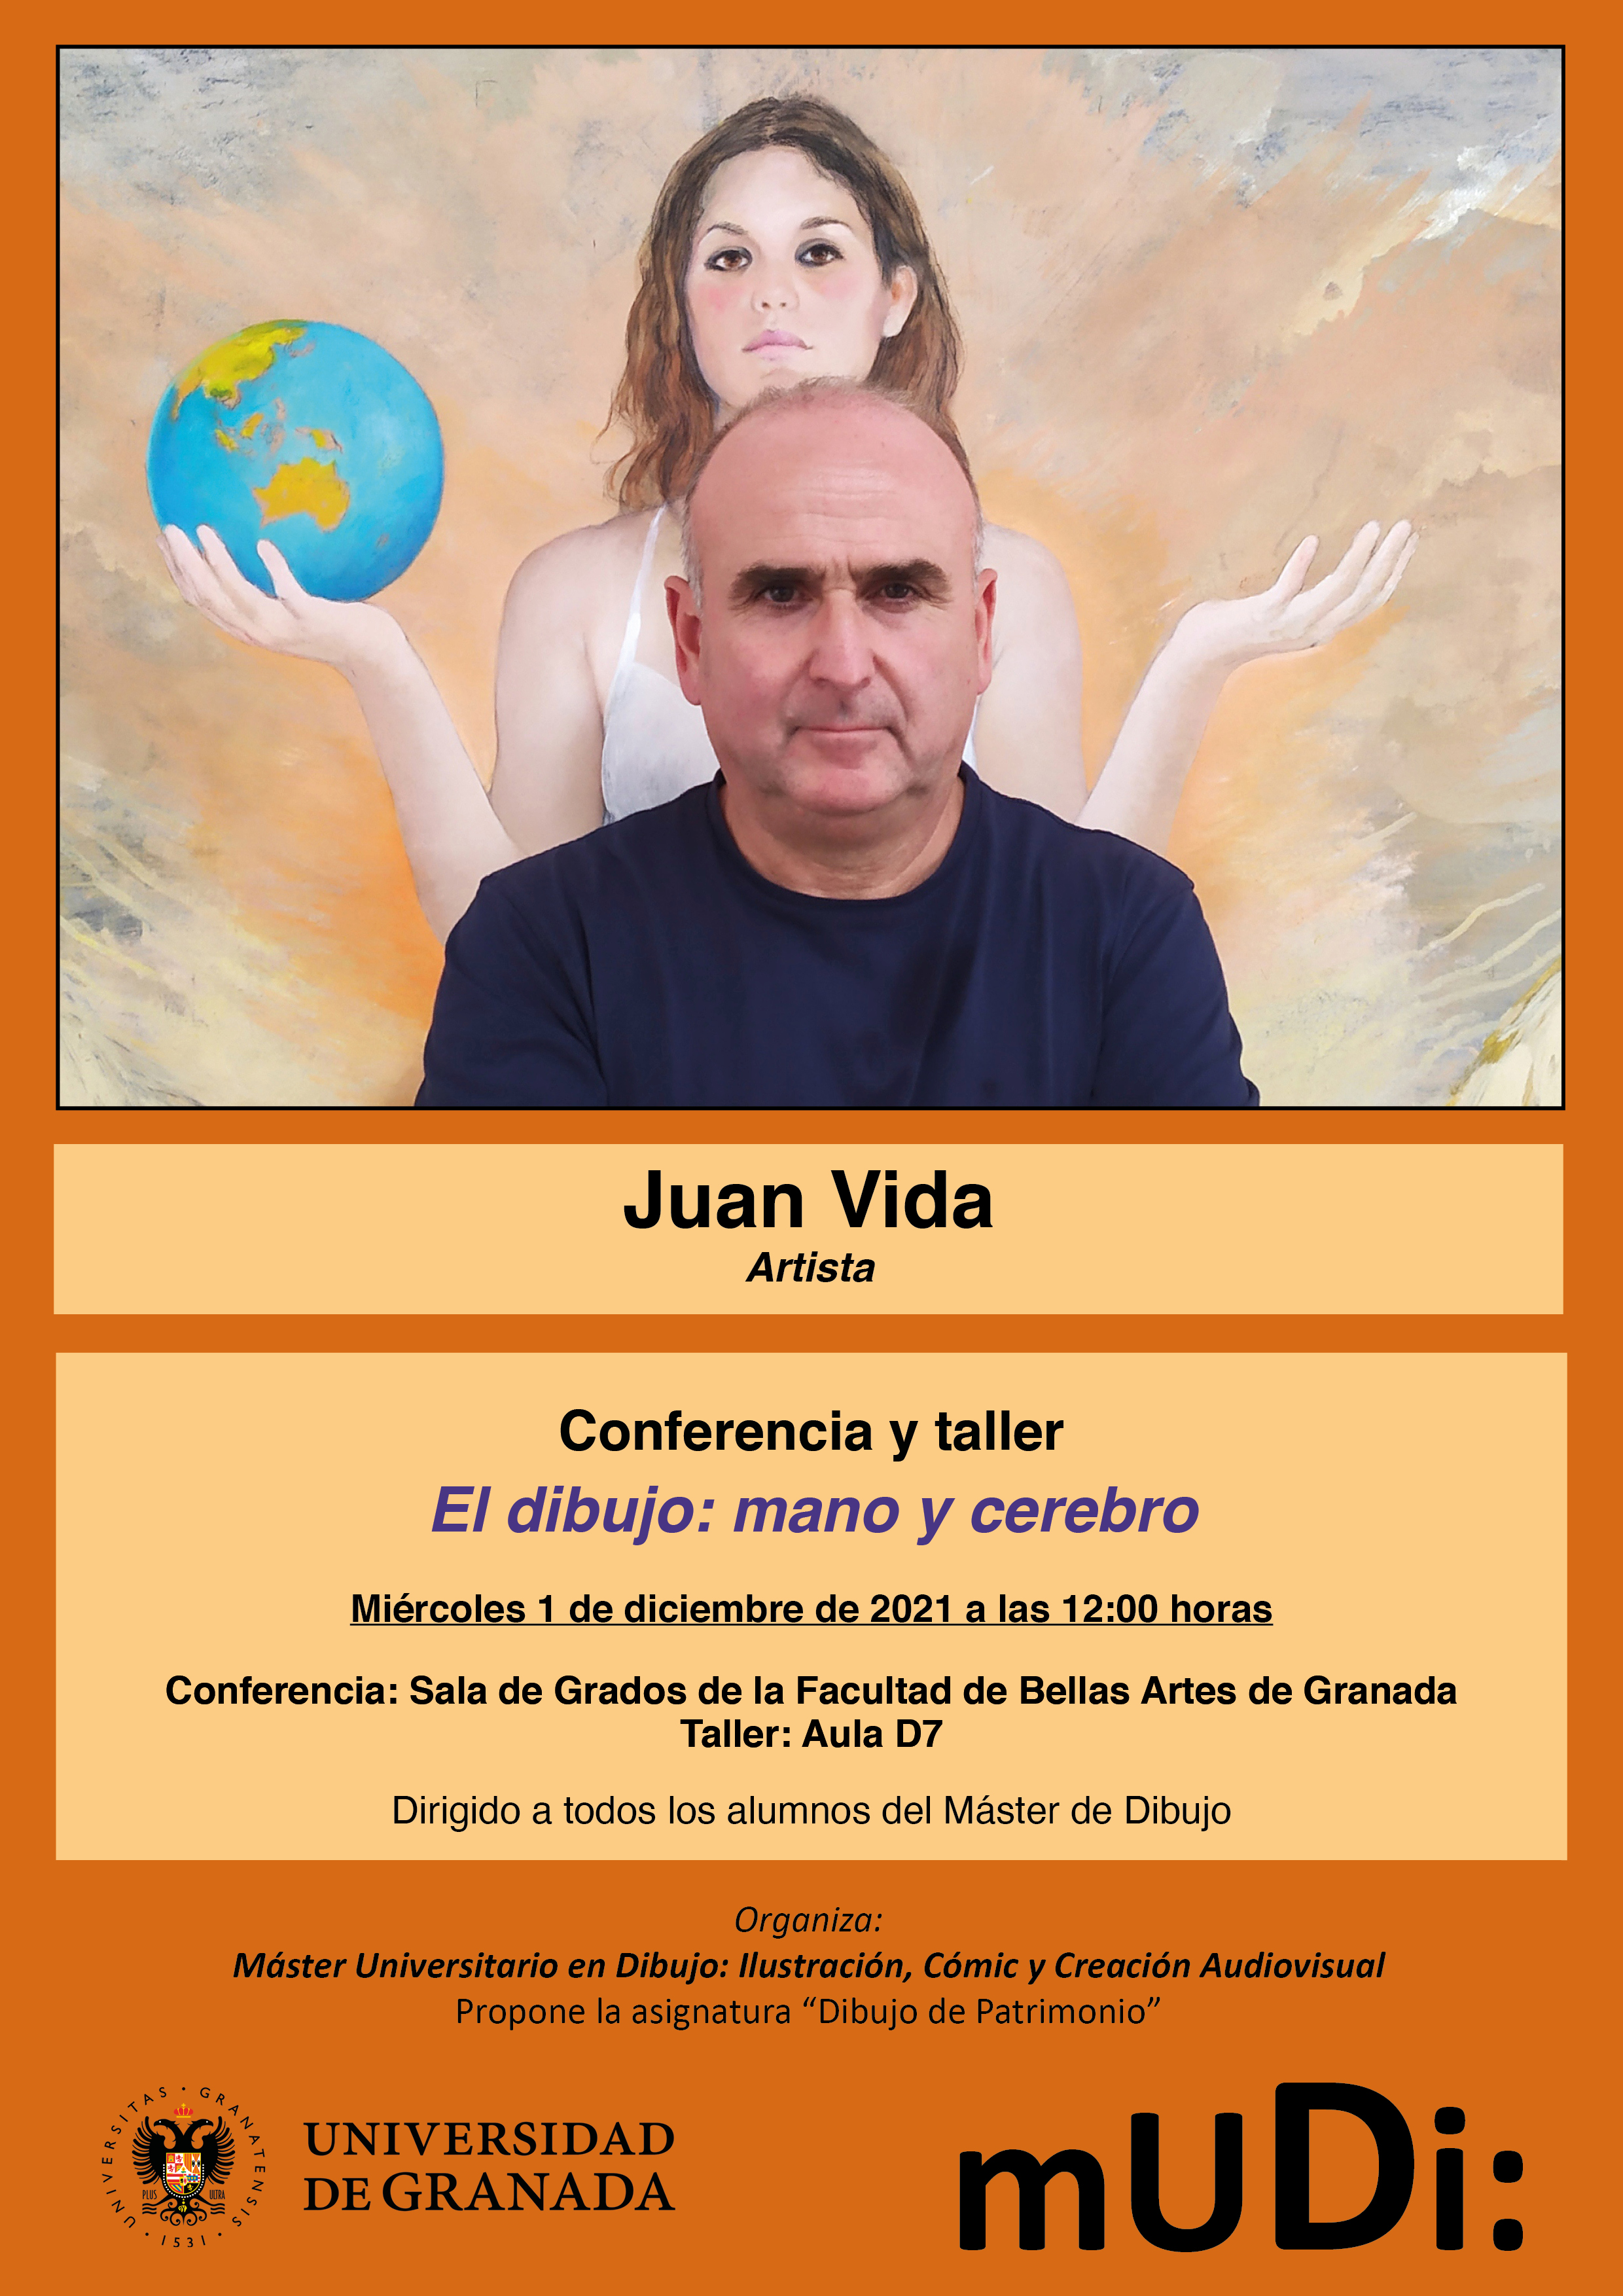 Cartel de la conferencia y taller a cargo del artista Juan Vida